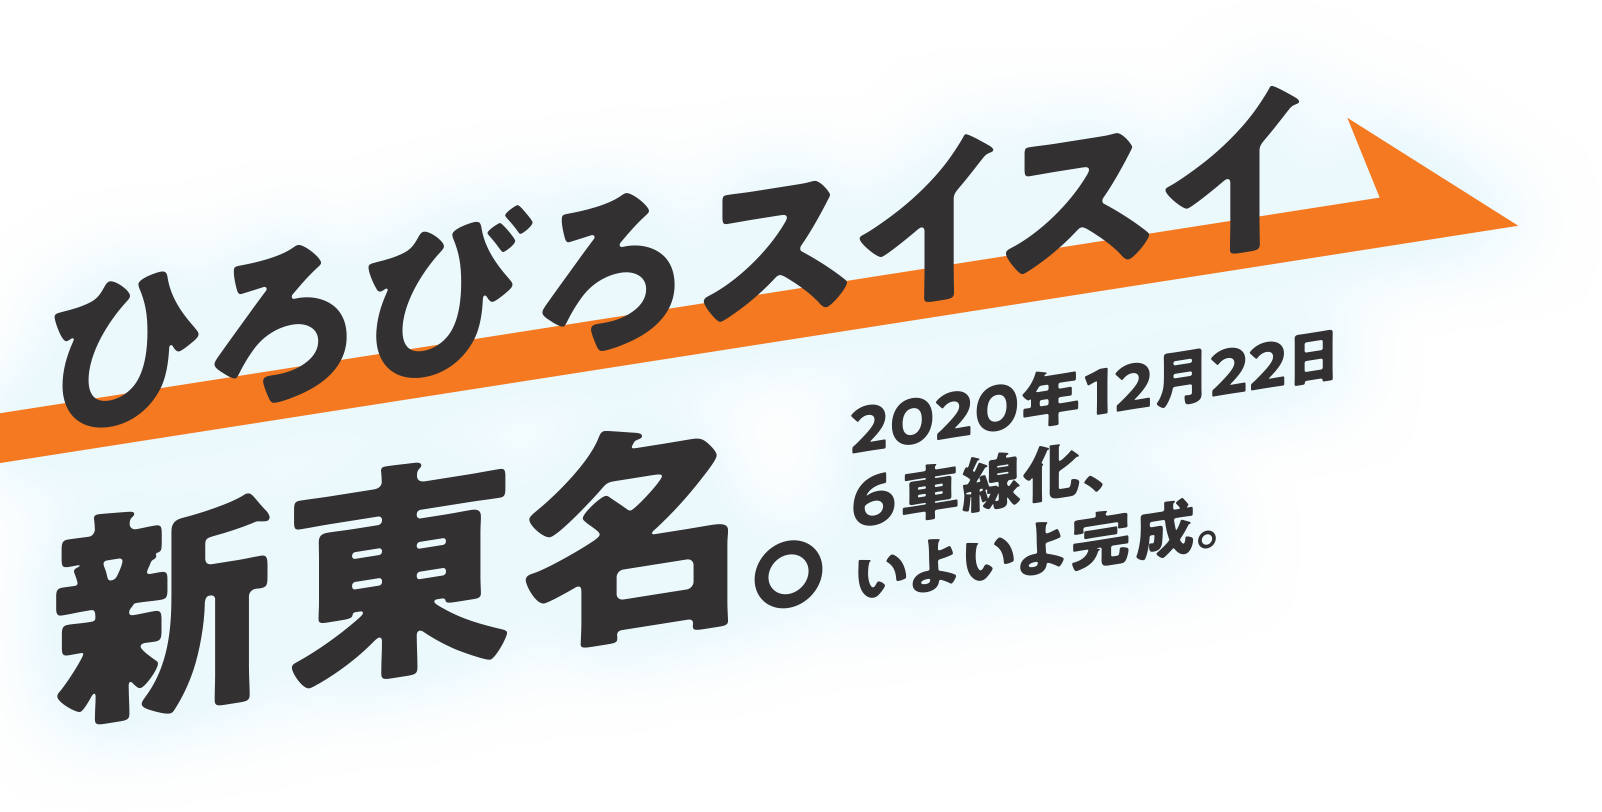 「ひろびろスイスイ 新東名。」2020年12月22日6車線化いよいよ完成。